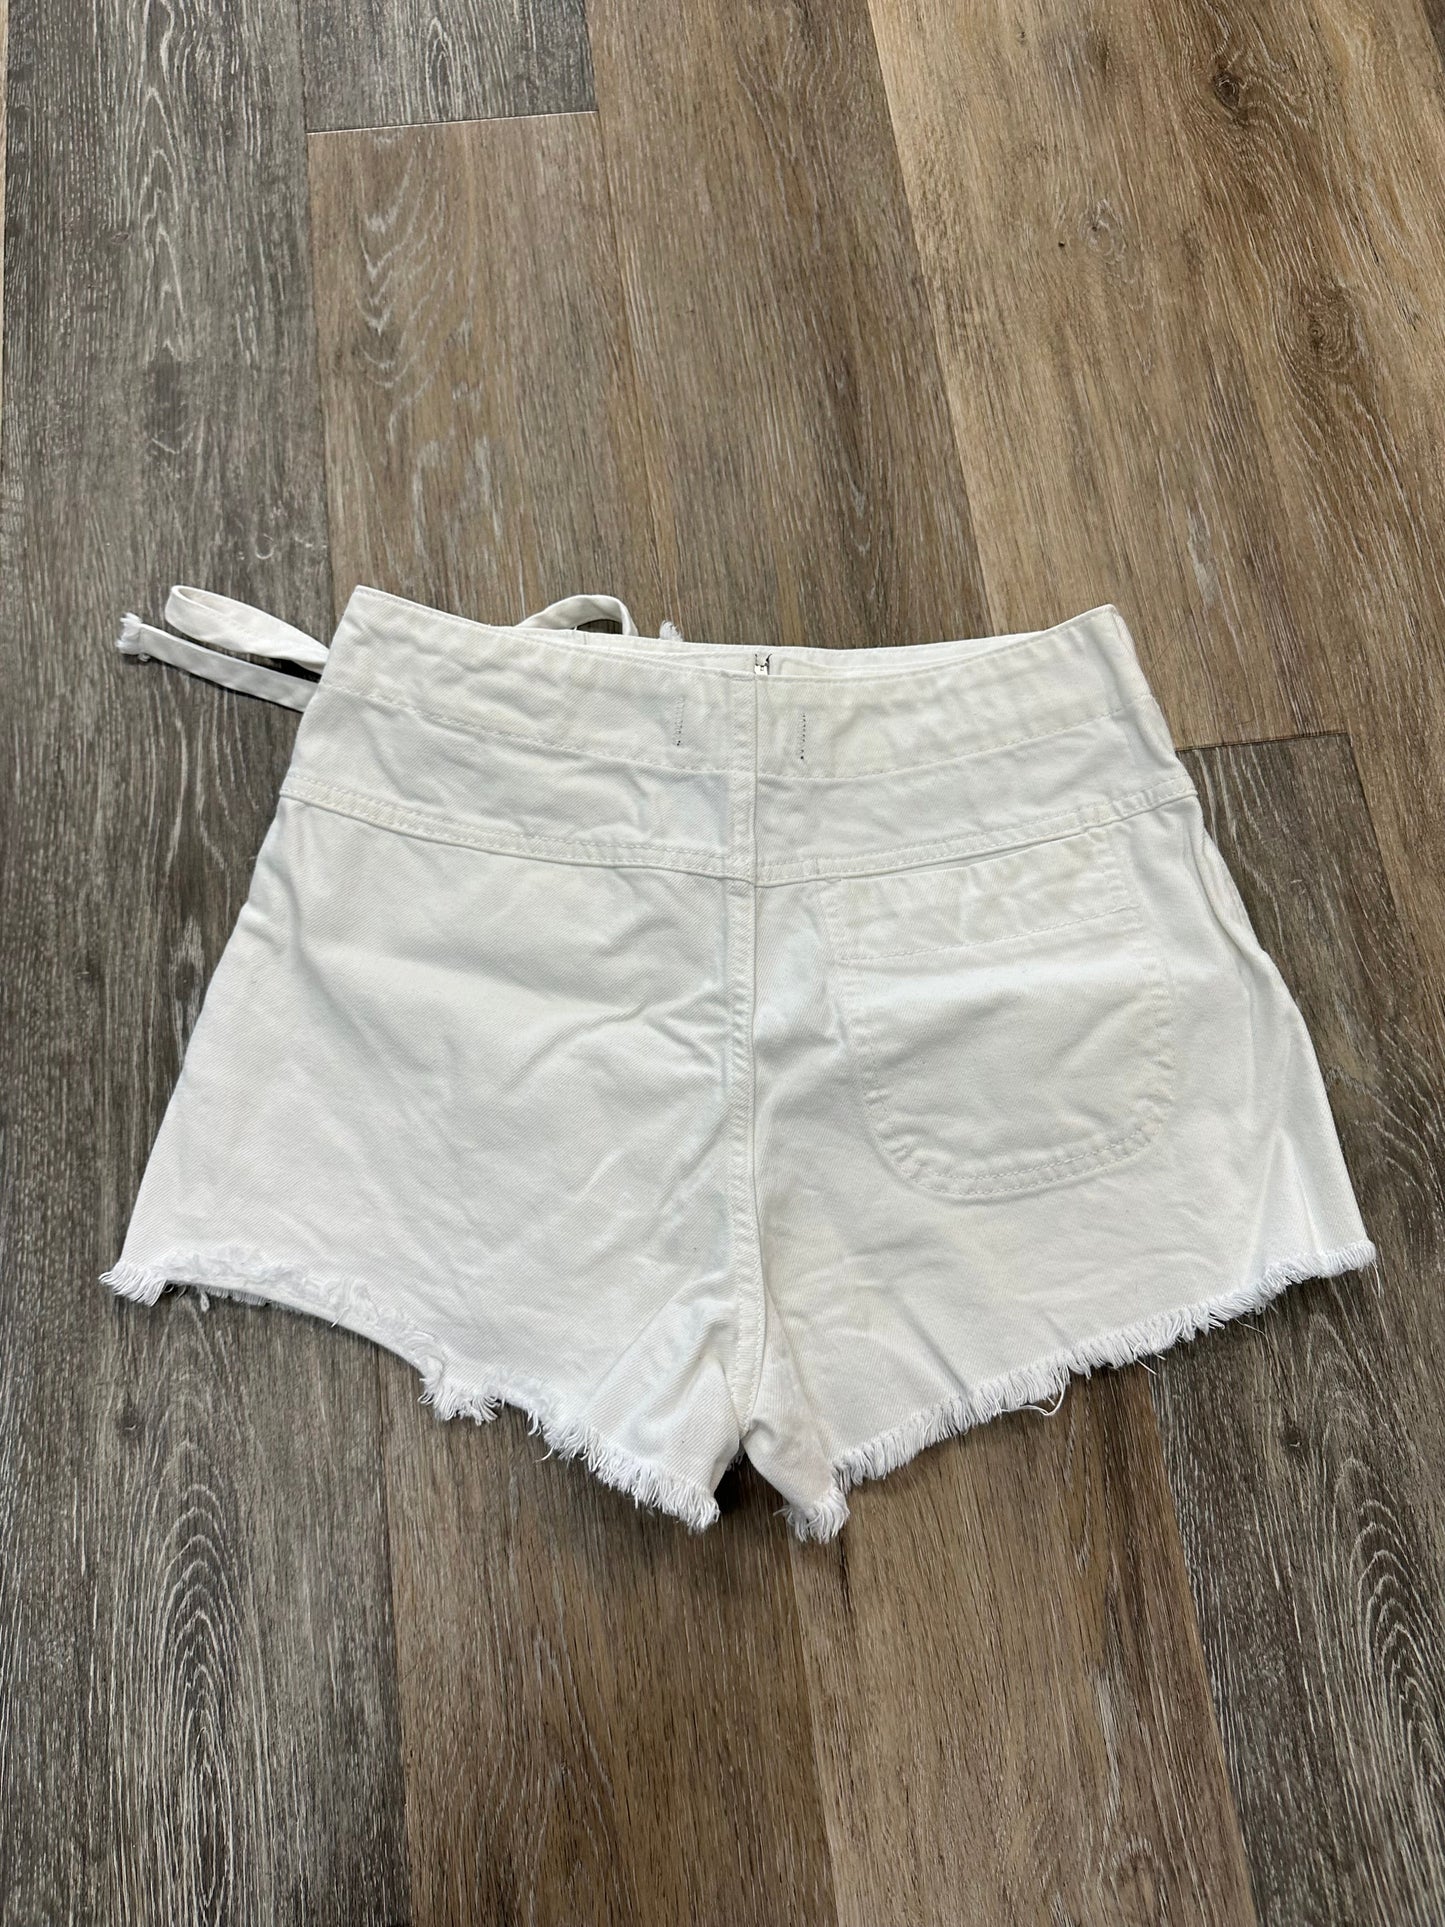 White Shorts We The Free, Size 4